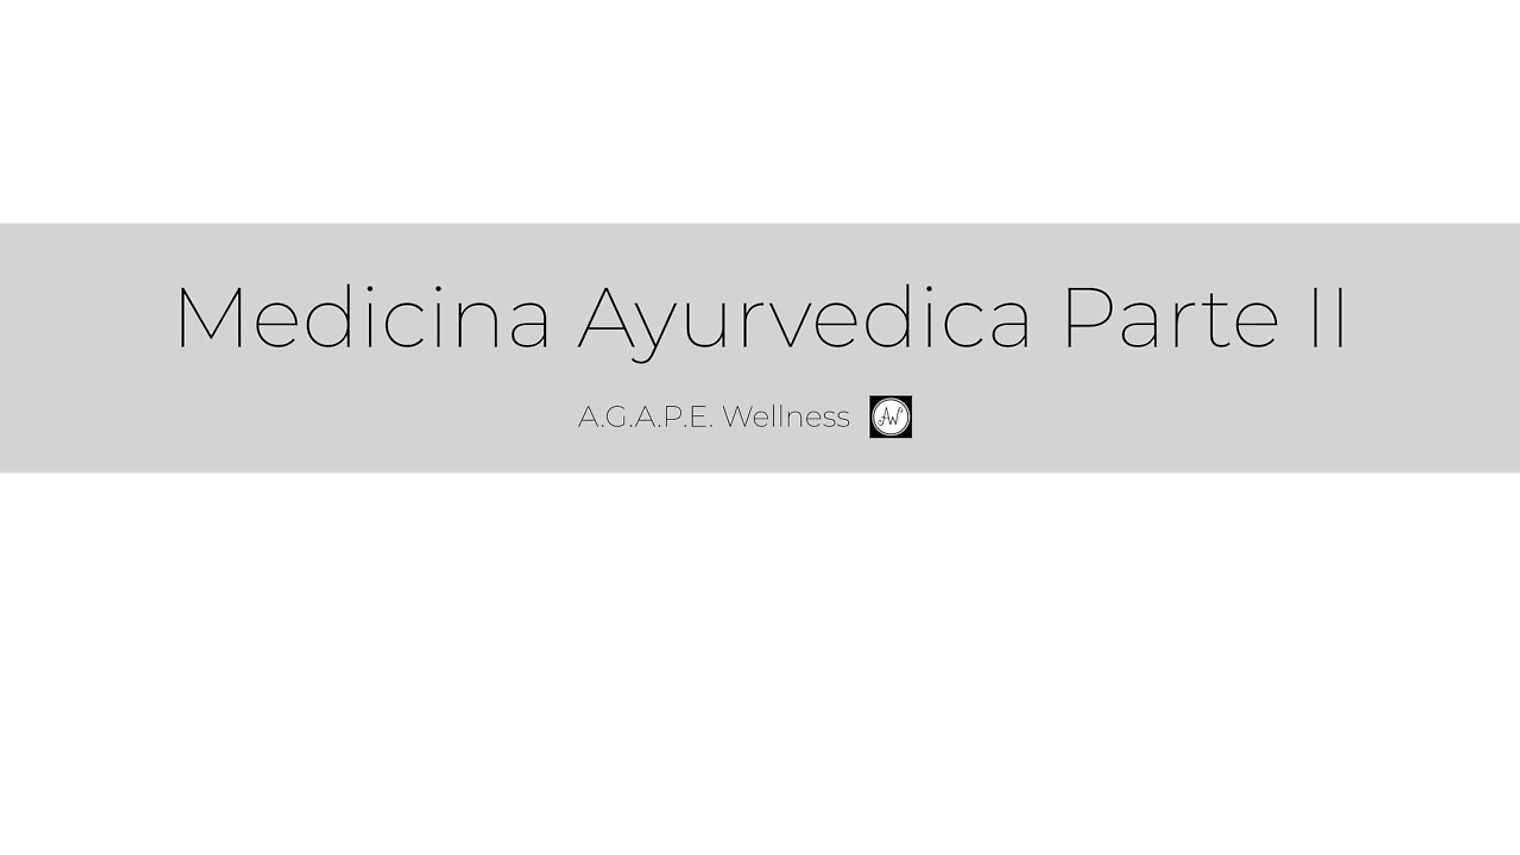 MEDICINA AYURVEDICA PARTE II | A.G.A.P.E. Wellness